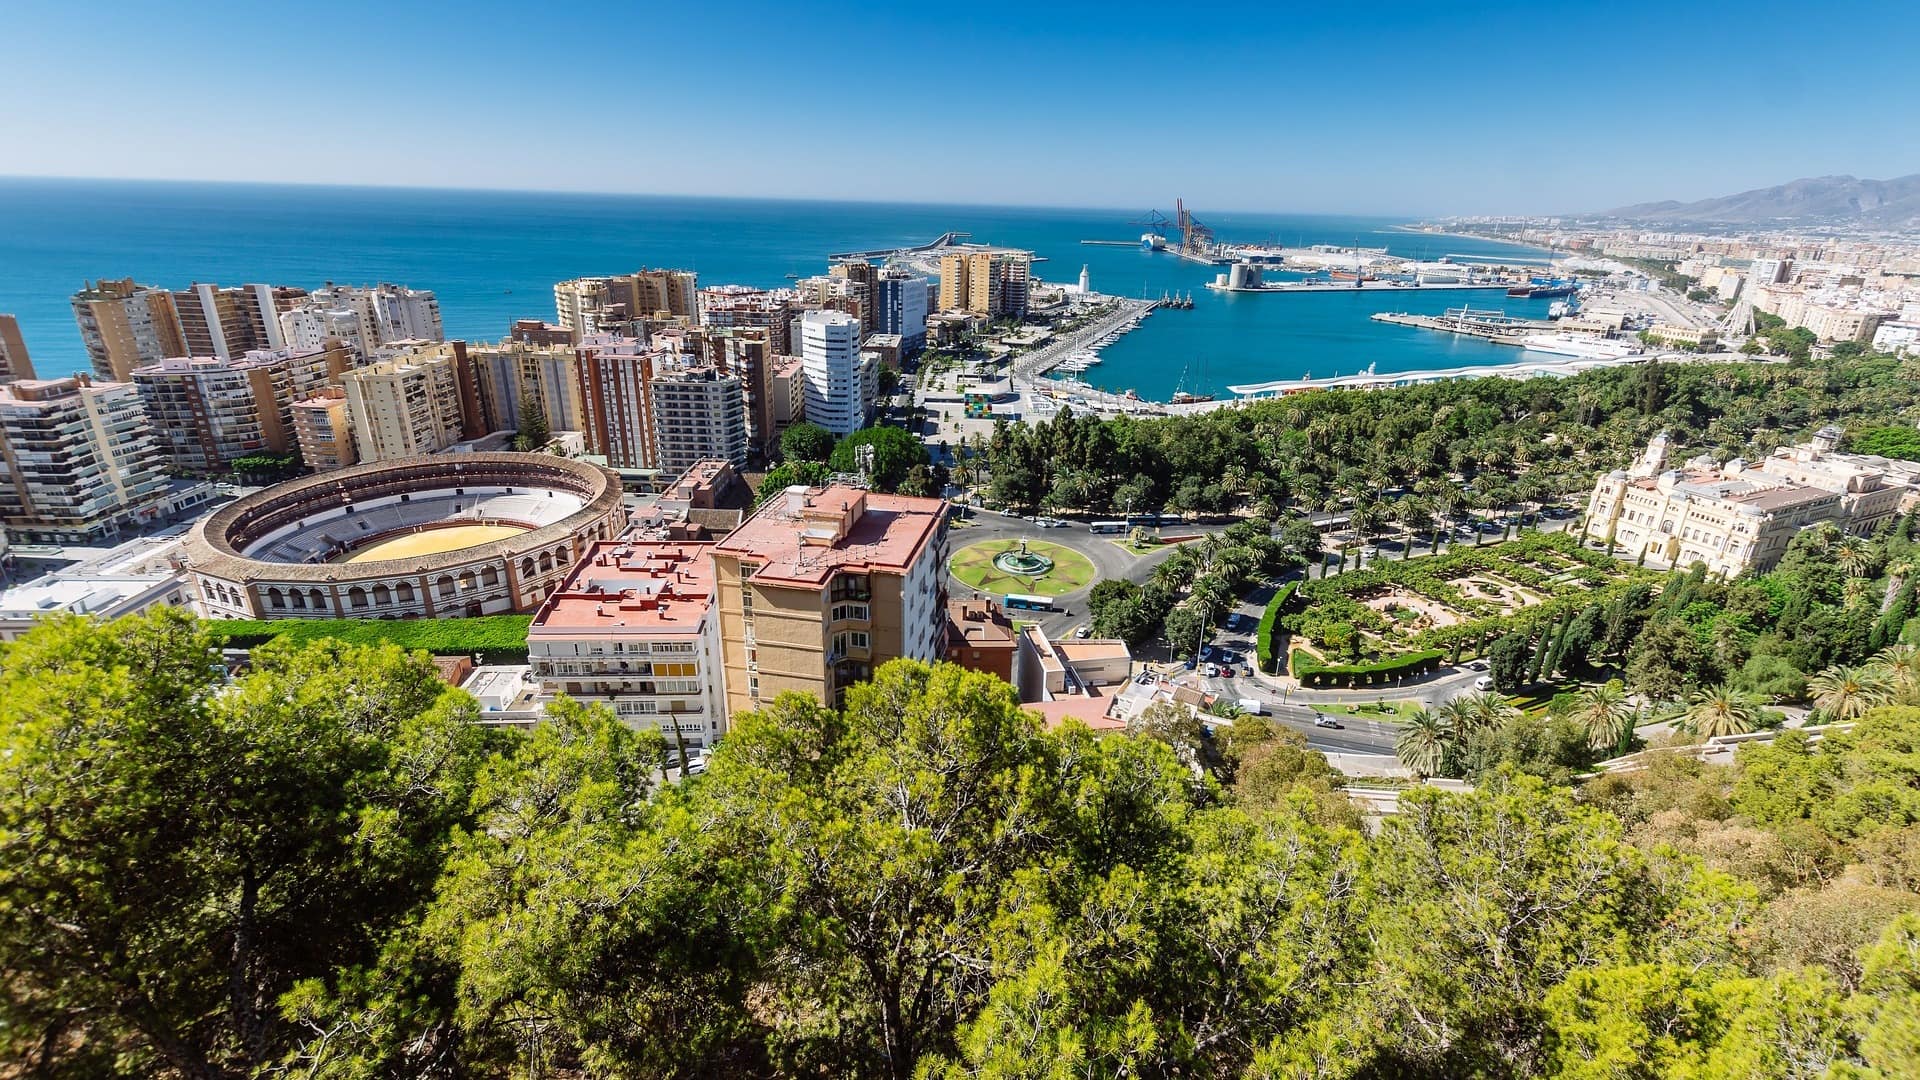 Vacaciones en Málaga, un destino muy completo